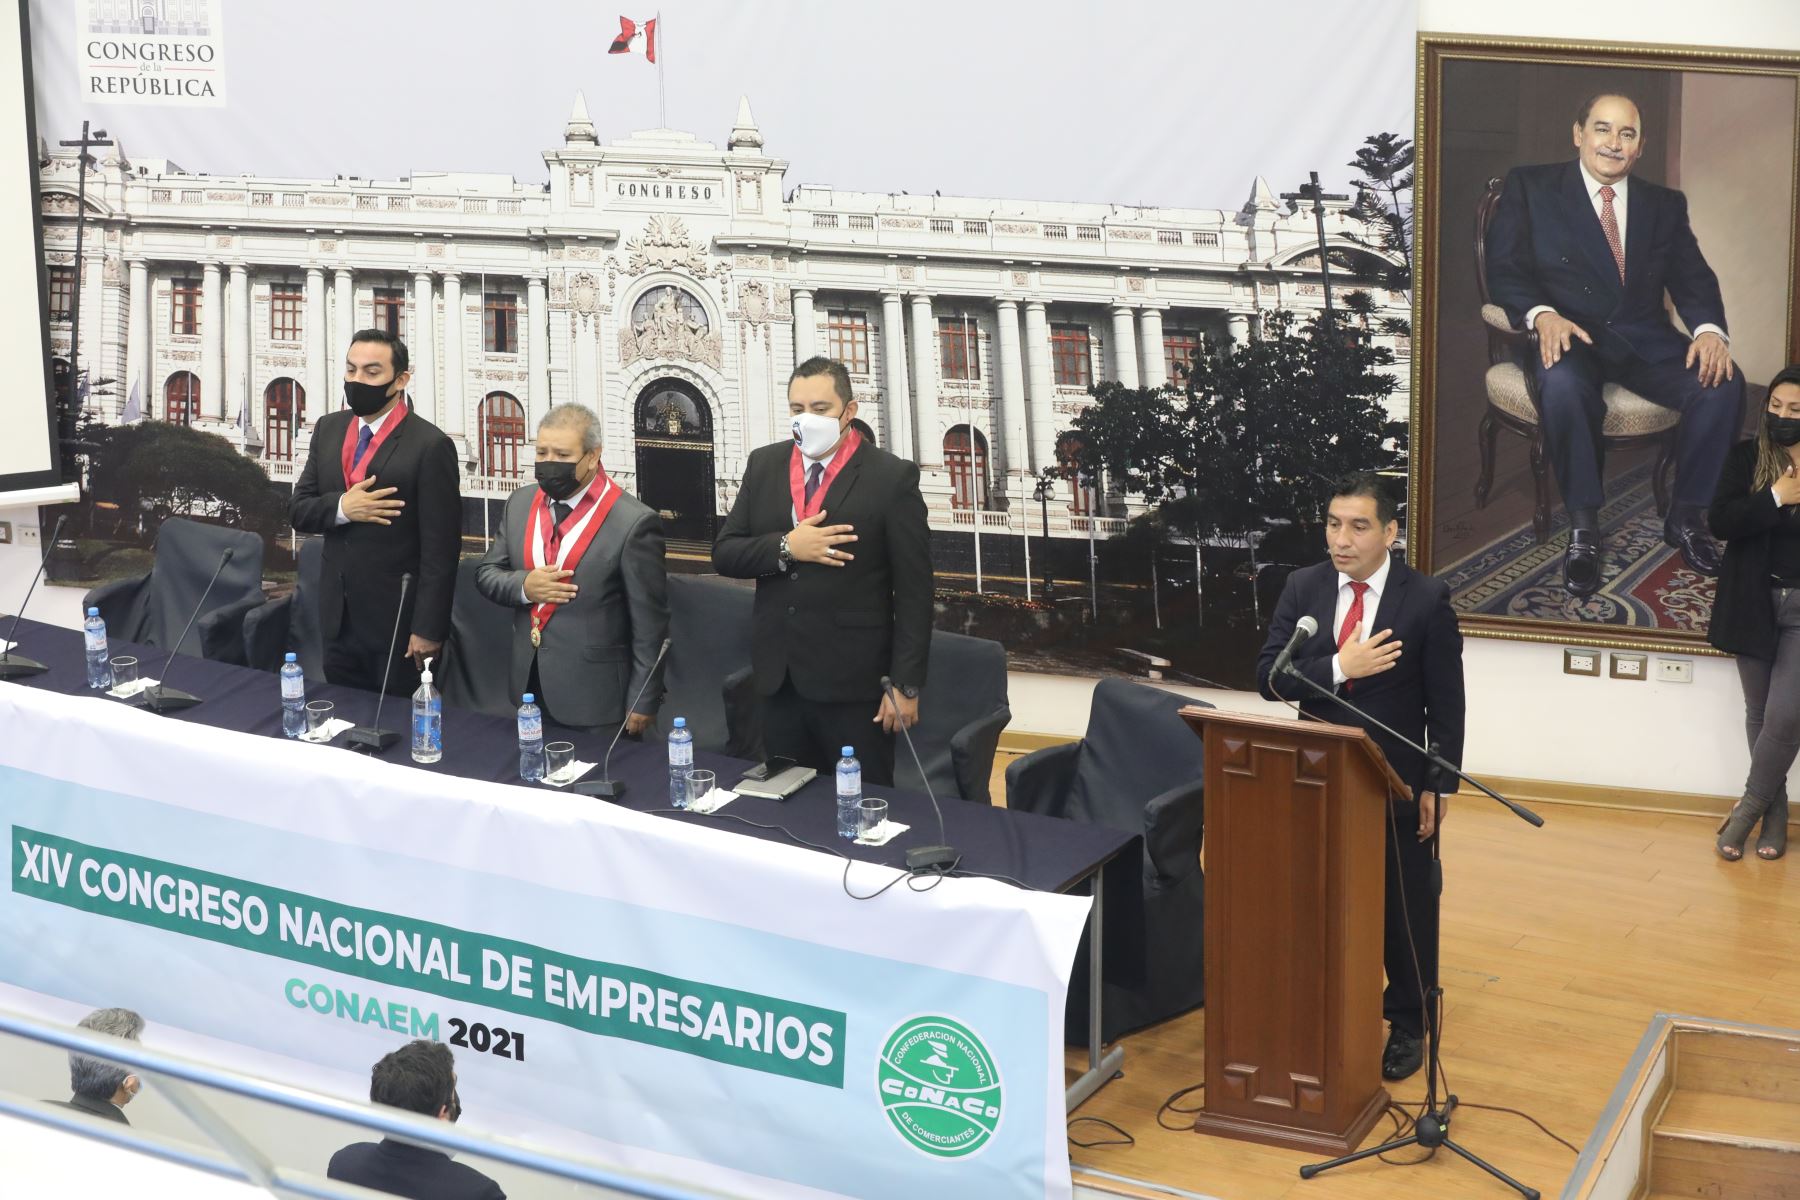 En el Congreso de la Republica realizo el XIV Congreso Nacional de Empresarios, CONAMEM 2021.
Foto: Congreso